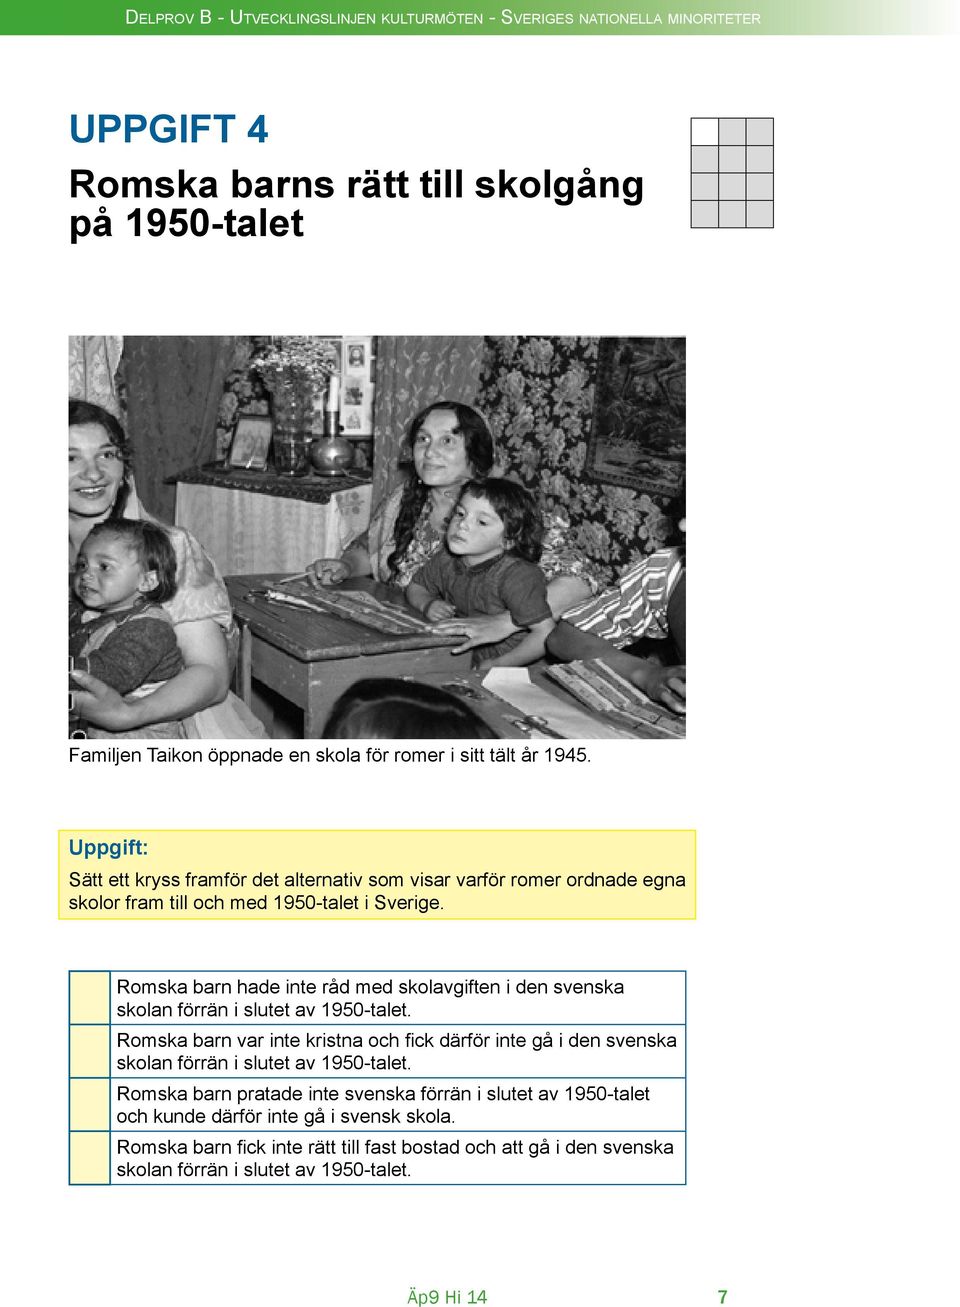 Romska barn hade inte råd med skolavgiften i den svenska skolan förrän i slutet av 1950-talet.